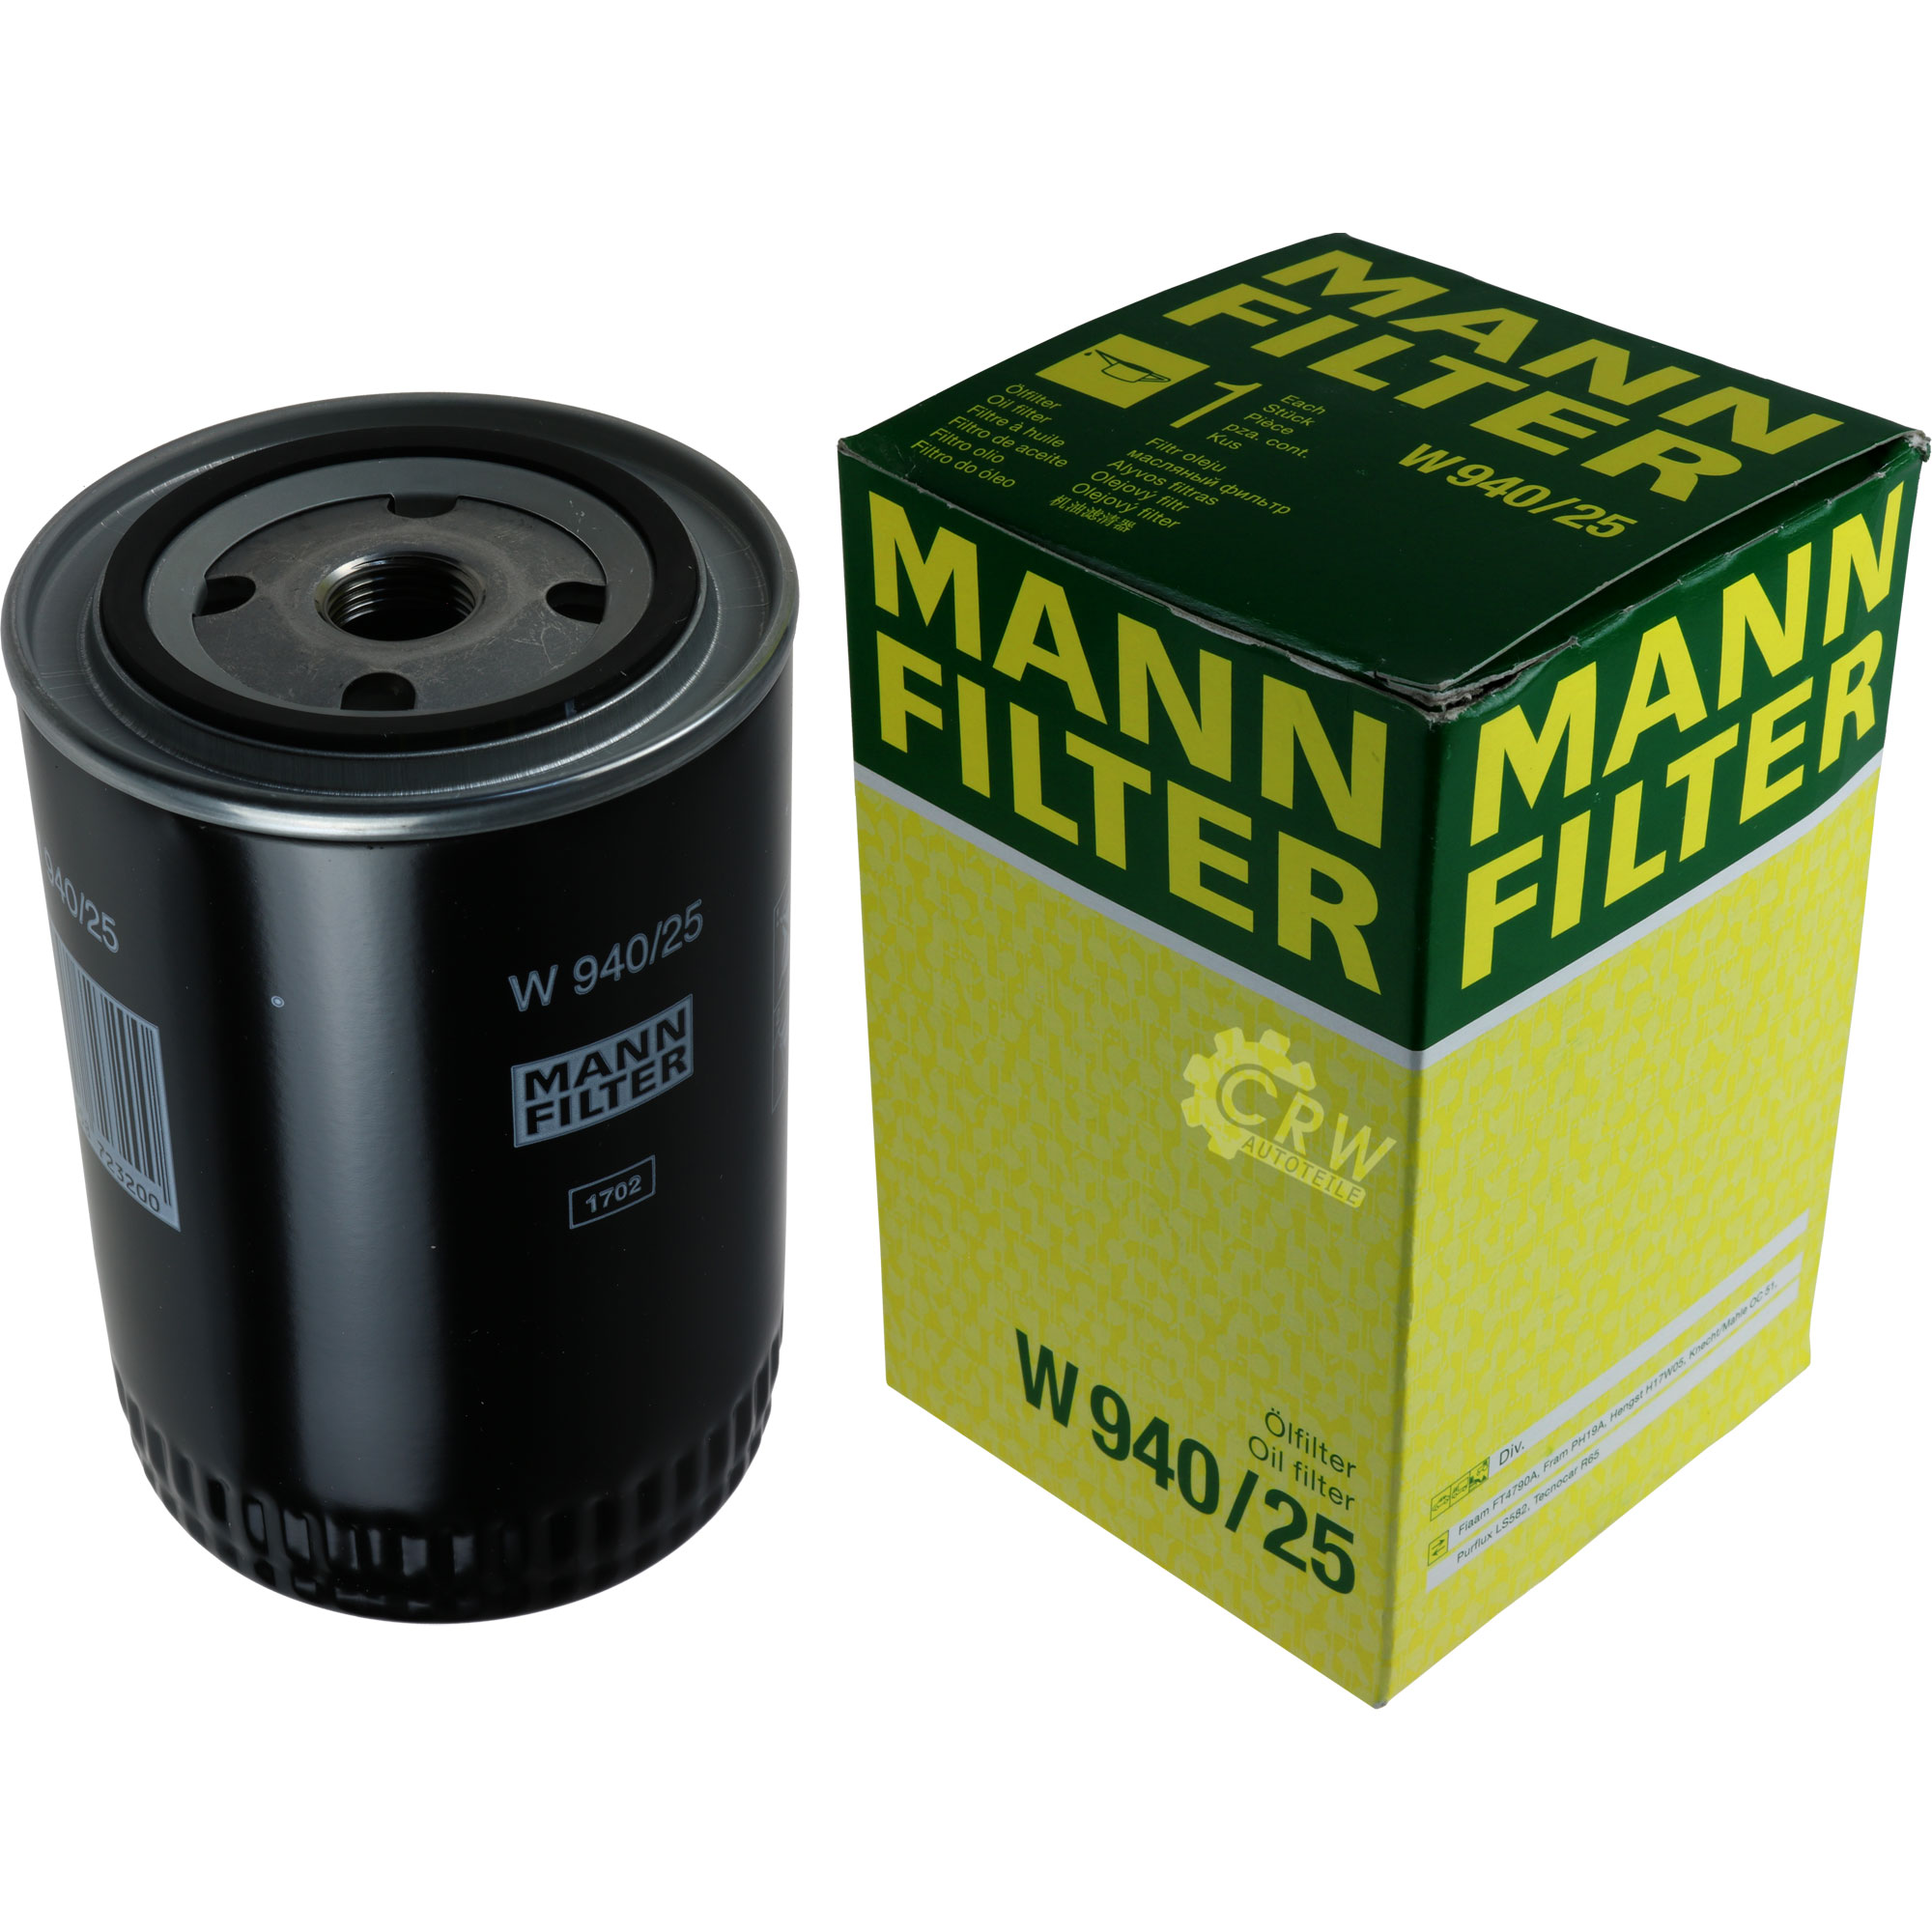 Масляный фильтр манн оригинал. Mann-Filter w940 фильтр масло. W940/25 фильтр масляный. Фильтр масляный Mann w7041. Масляный фильтр Mann-Filter w 940/25 4.8.